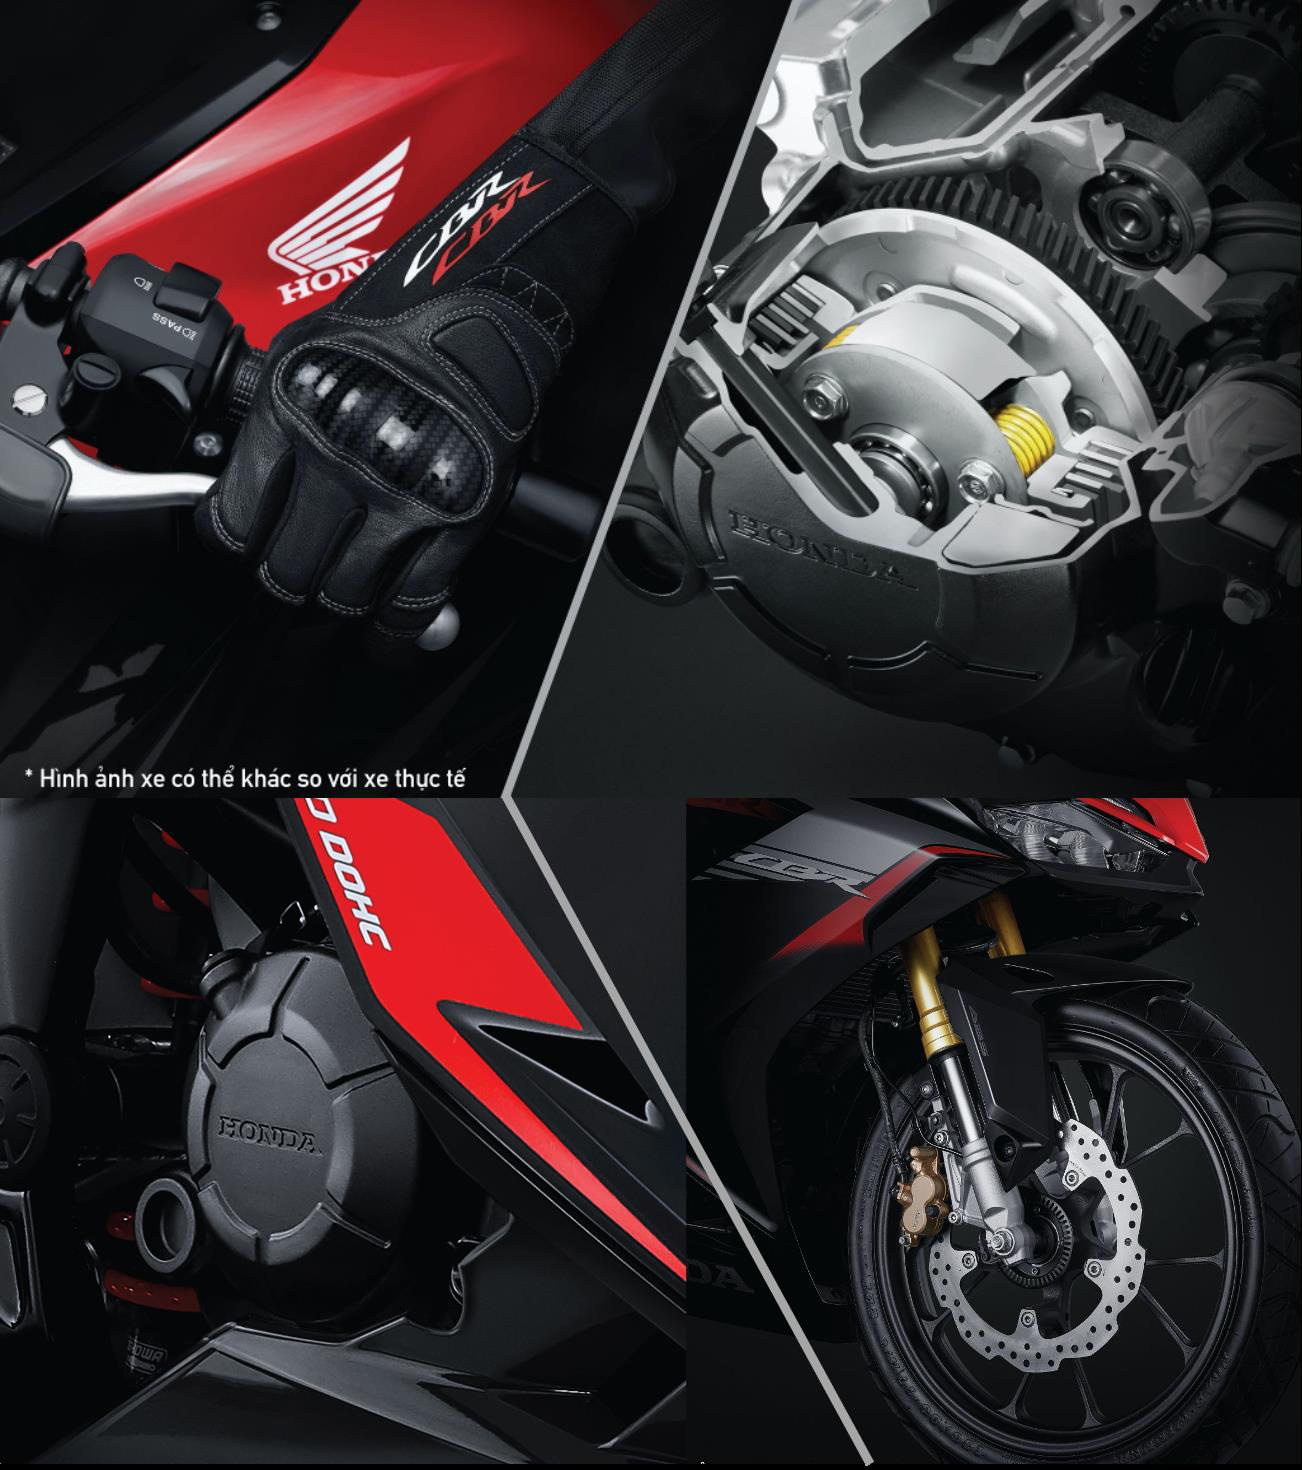 Honda CBR150R 2021: Motor thể thao hấp dẫn bậc nhất phân khúc - Ảnh 5.